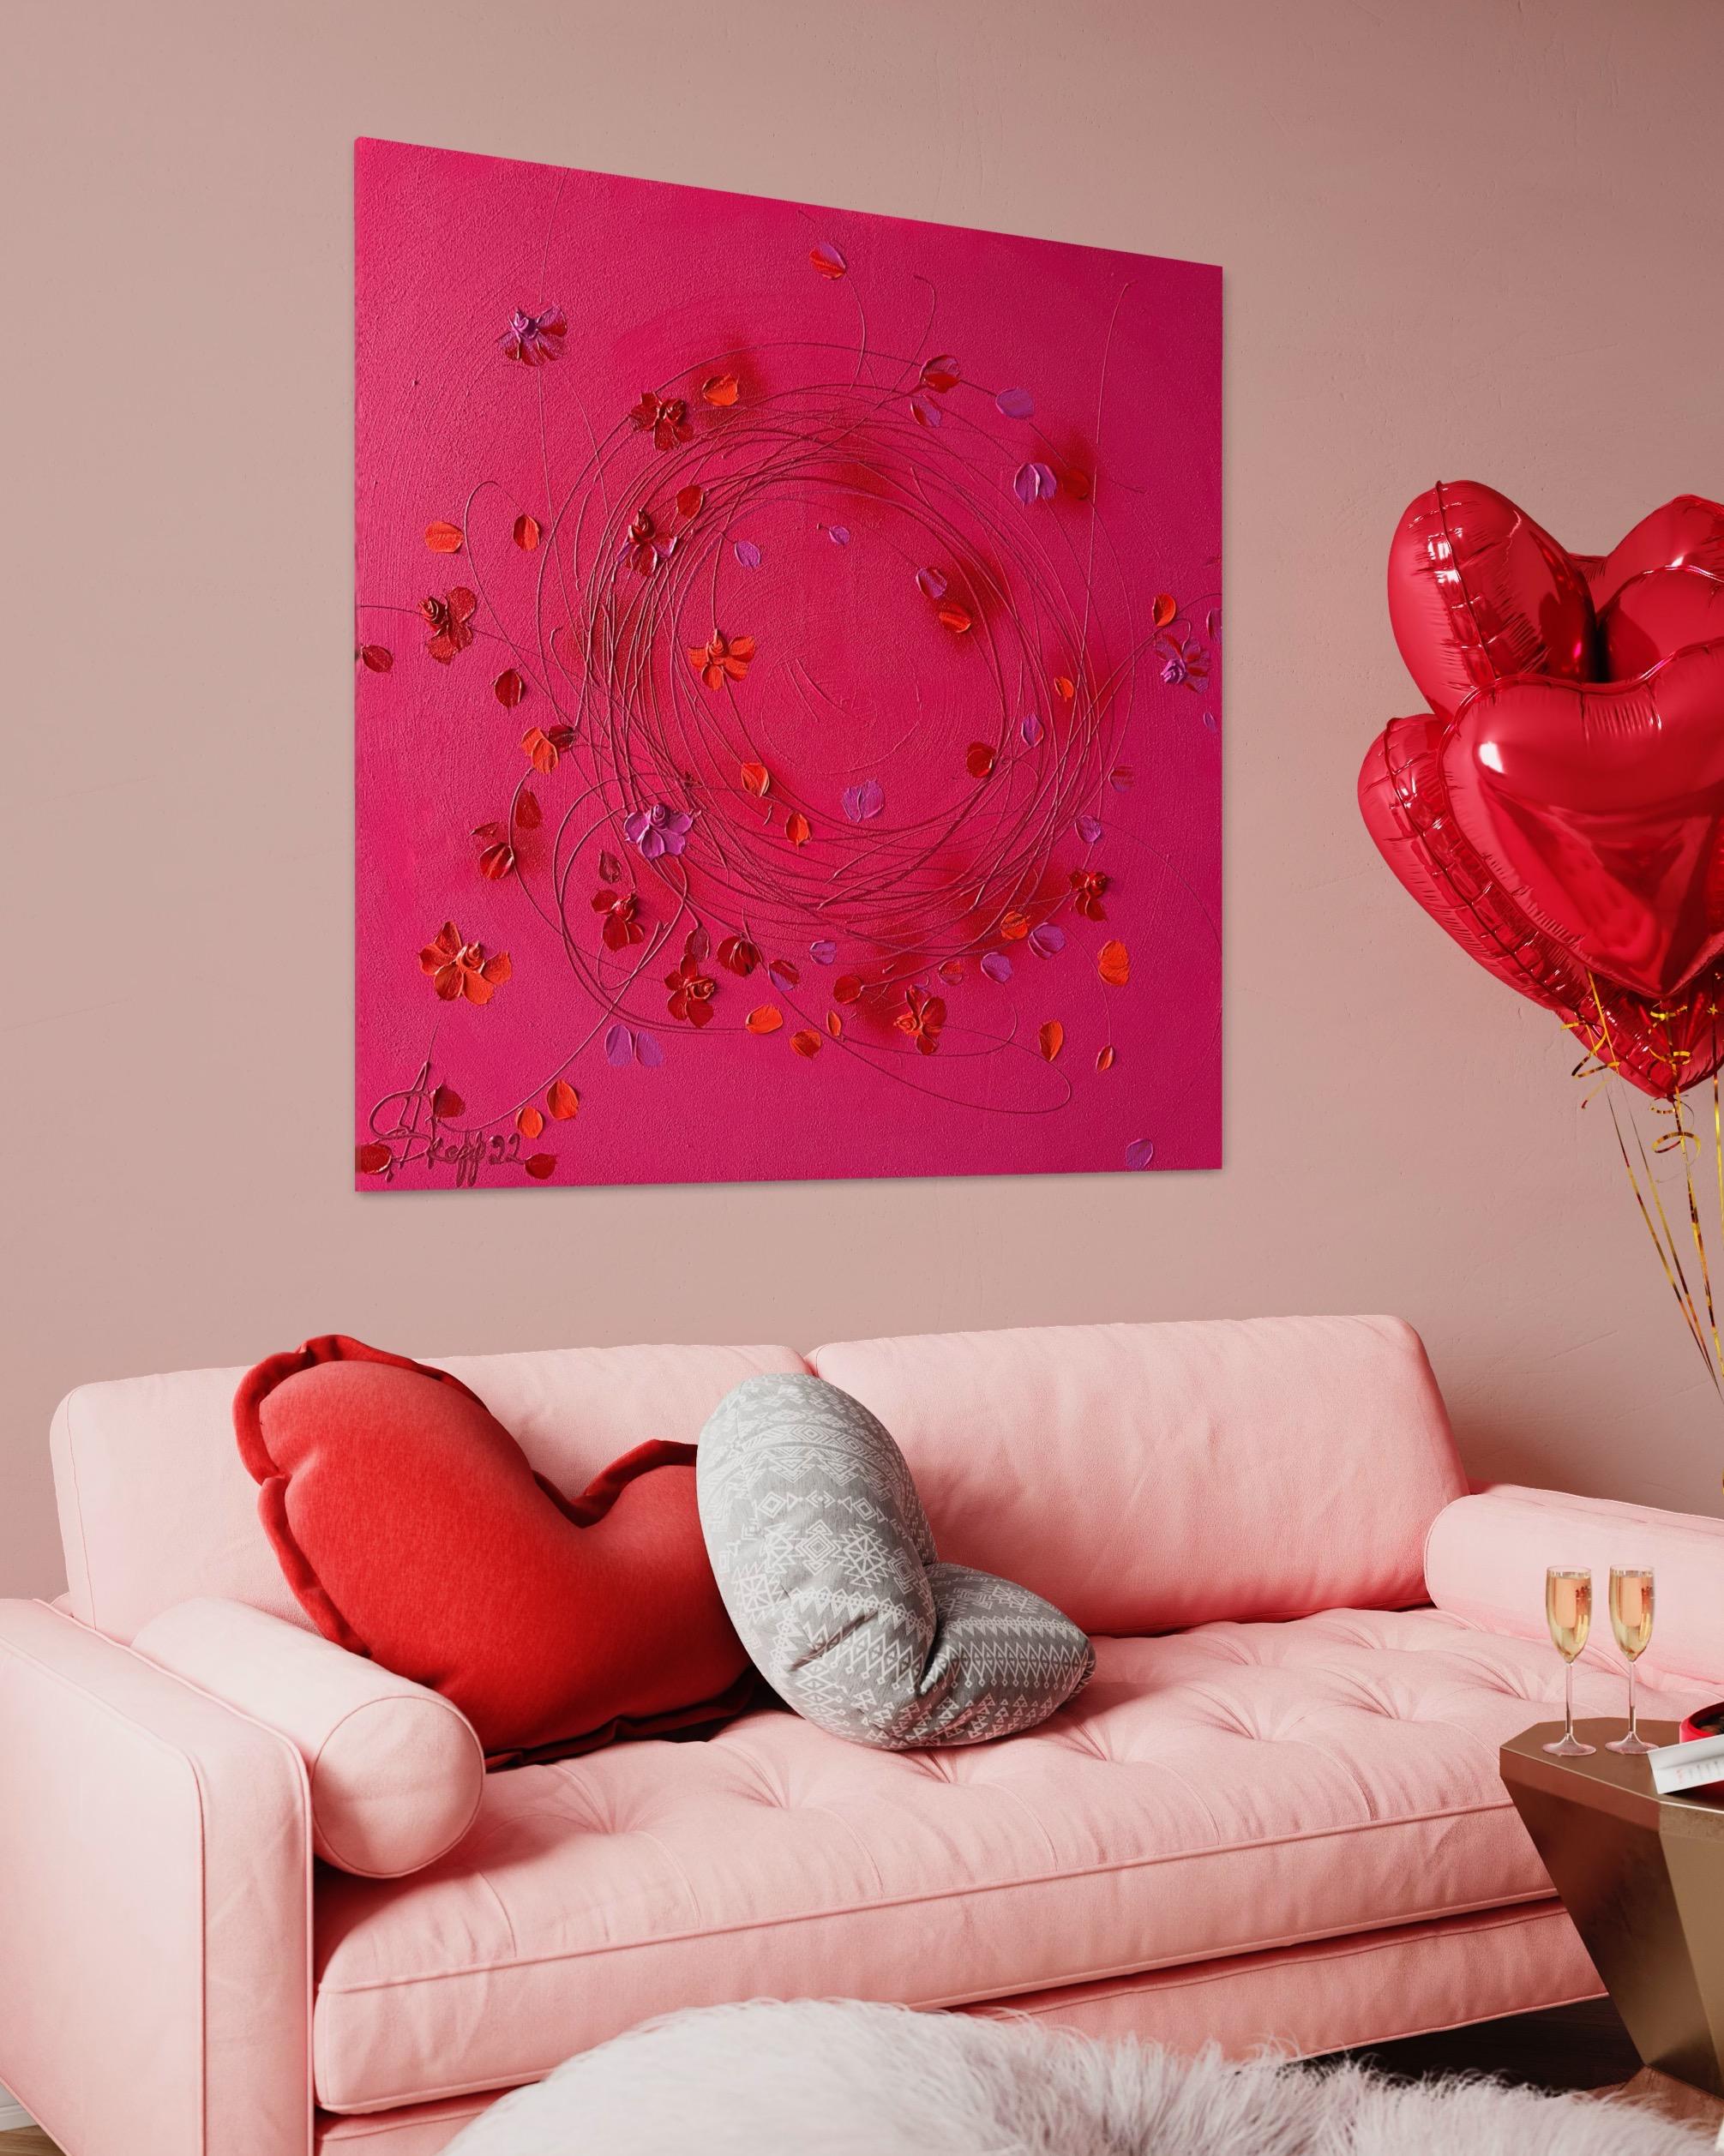 Voici un chef-d'œuvre floral époustouflant dans la couleur Pantone de l'année 2023 - Viva Magenta. Cette œuvre d'art acrylique texturée sur toile mesure 90x90x2 cm et présente un ensemble captivant de roses rouges qui sont tridimensionnelles et